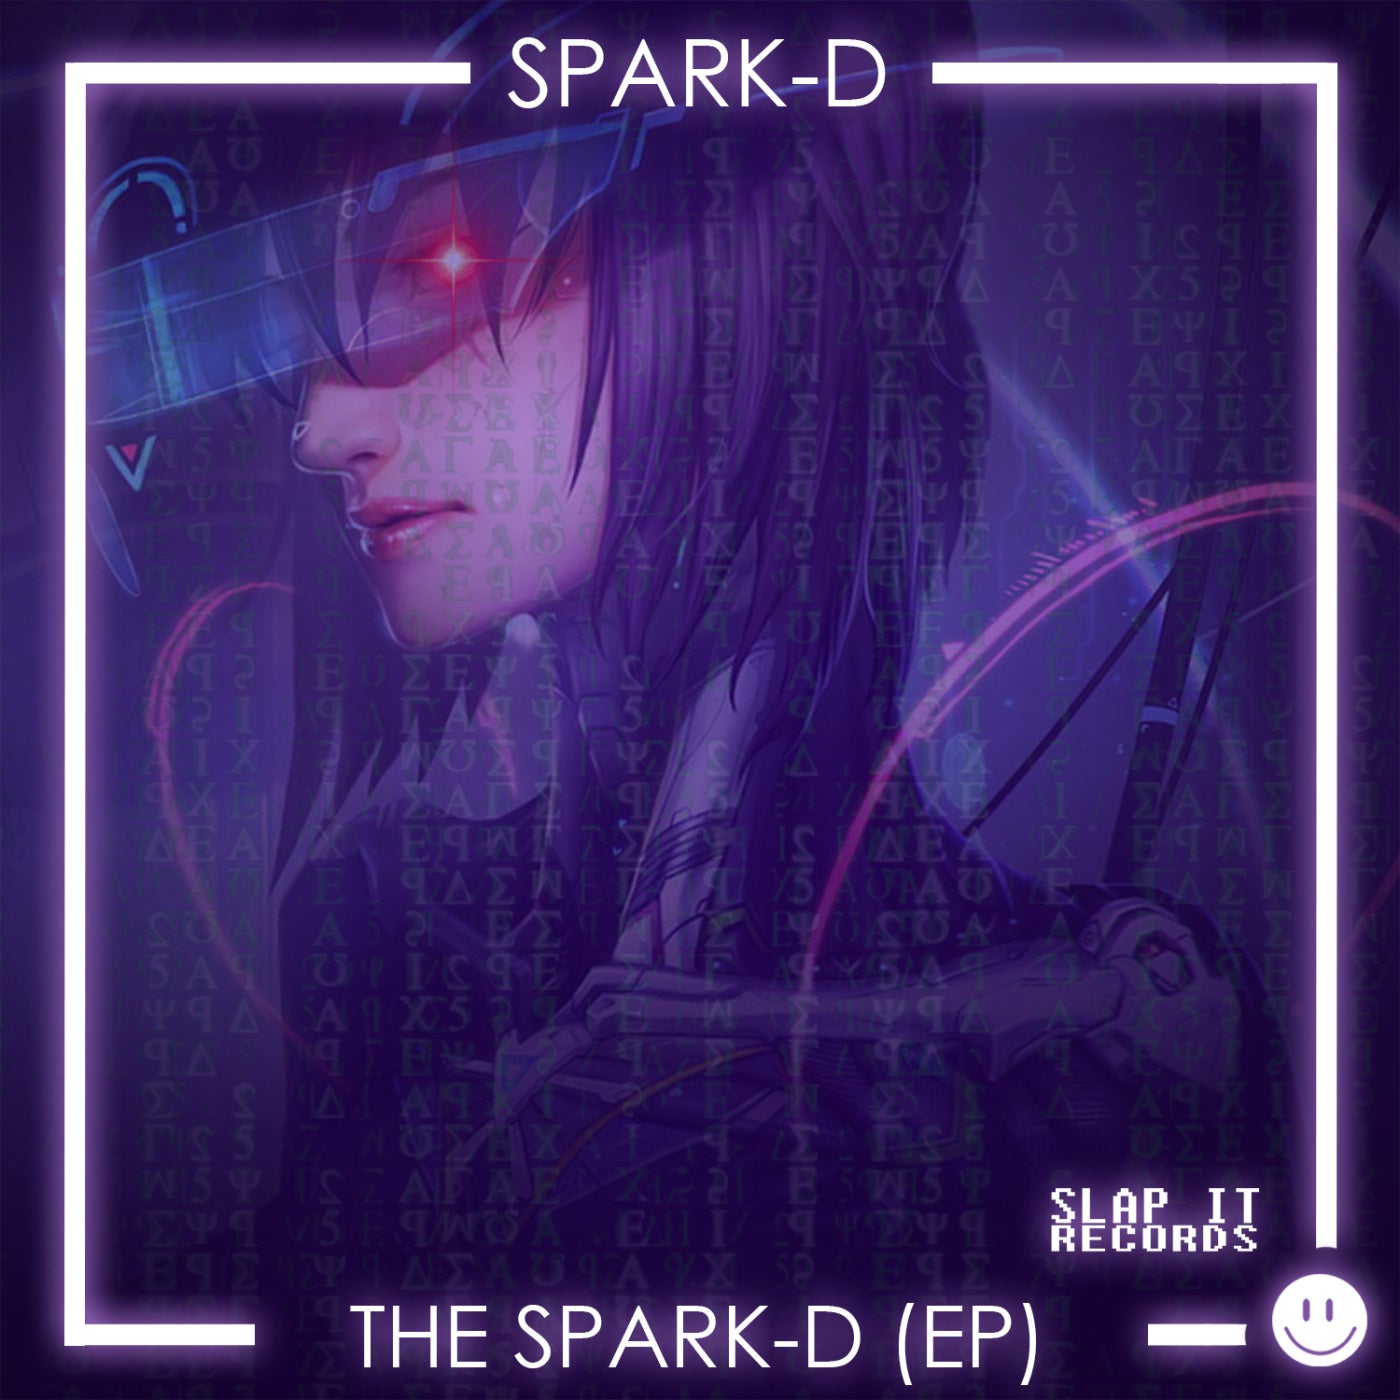 The Spark-D EP